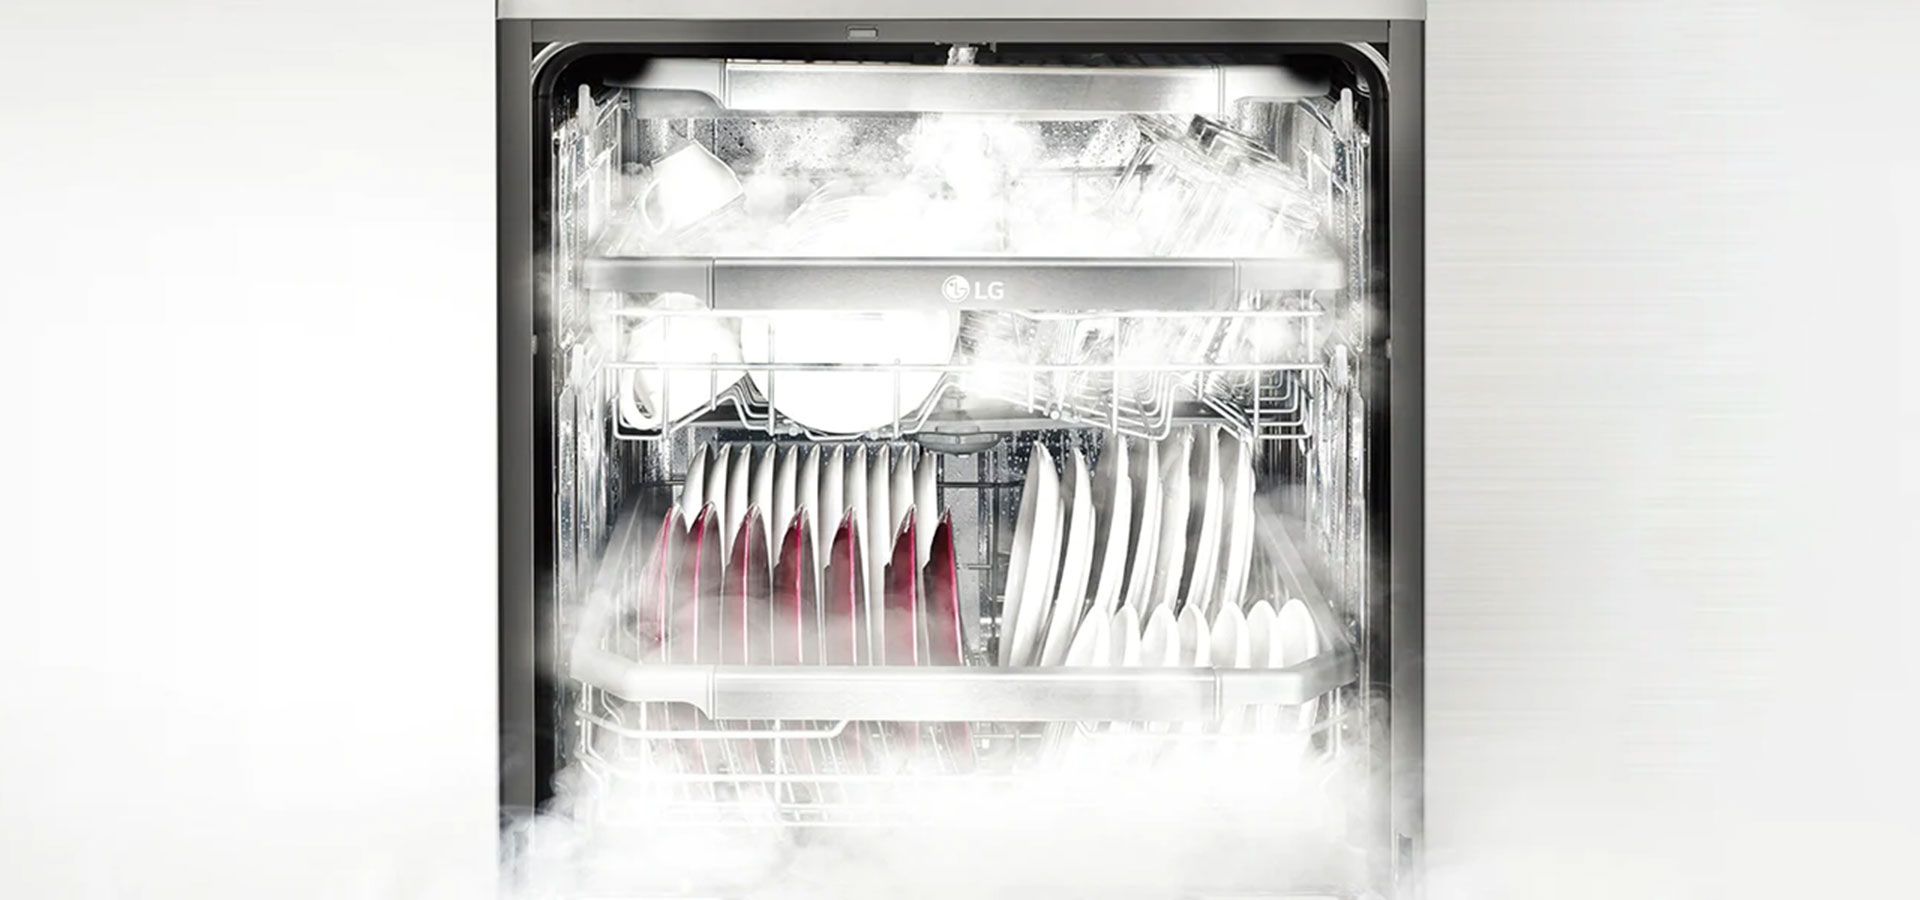 ظروفی در ماشین ظرفشویی در حال شسته شدن و بخاری که از آن بیرون می آید